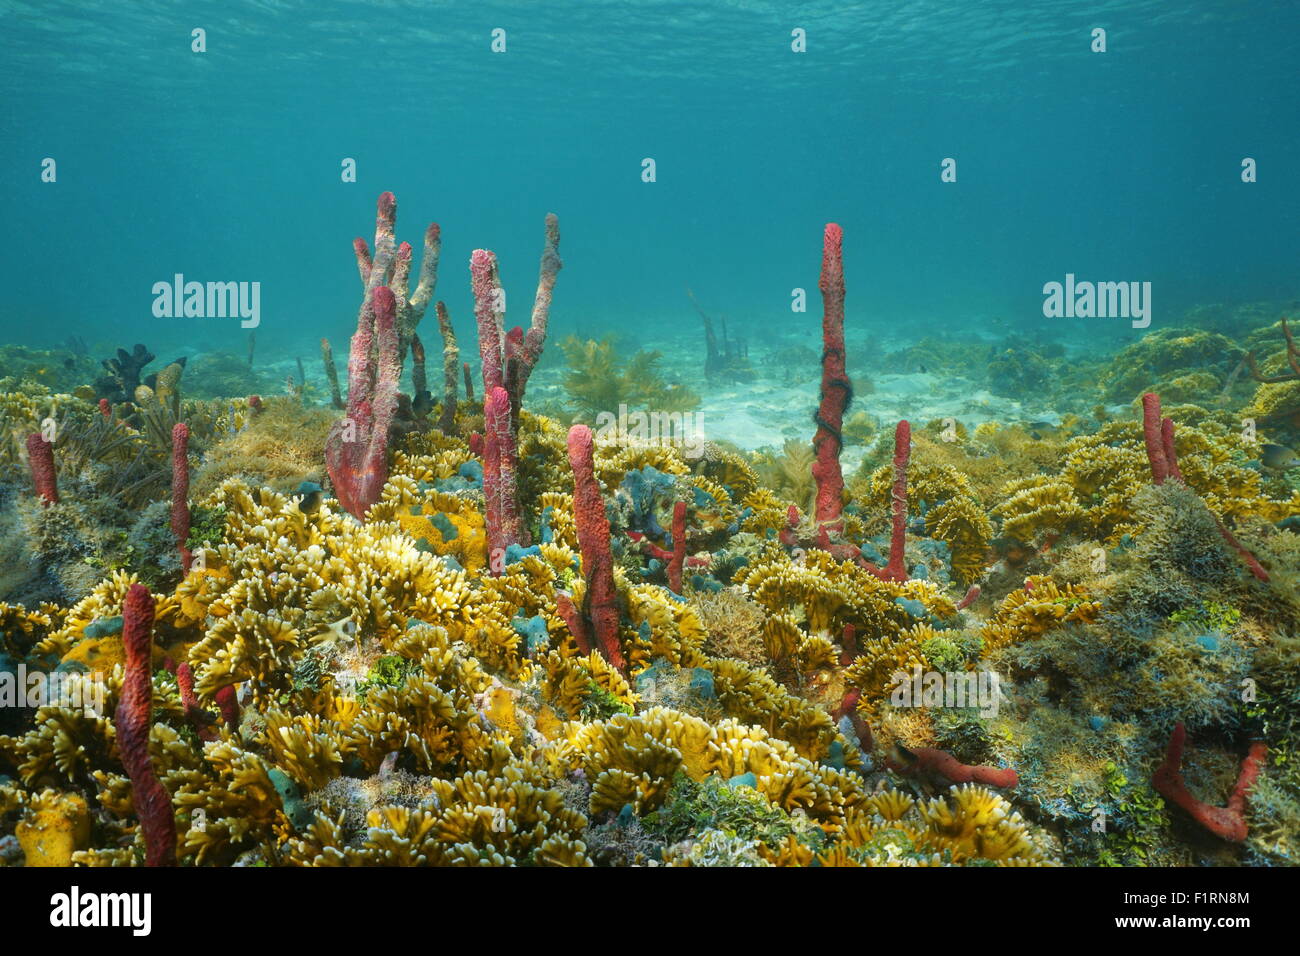 Unterwasserlandschaft, bunten Meeresboden komponiert von Schwämmen und Feuer Korallen, Karibik, Mittelamerika Stockfoto